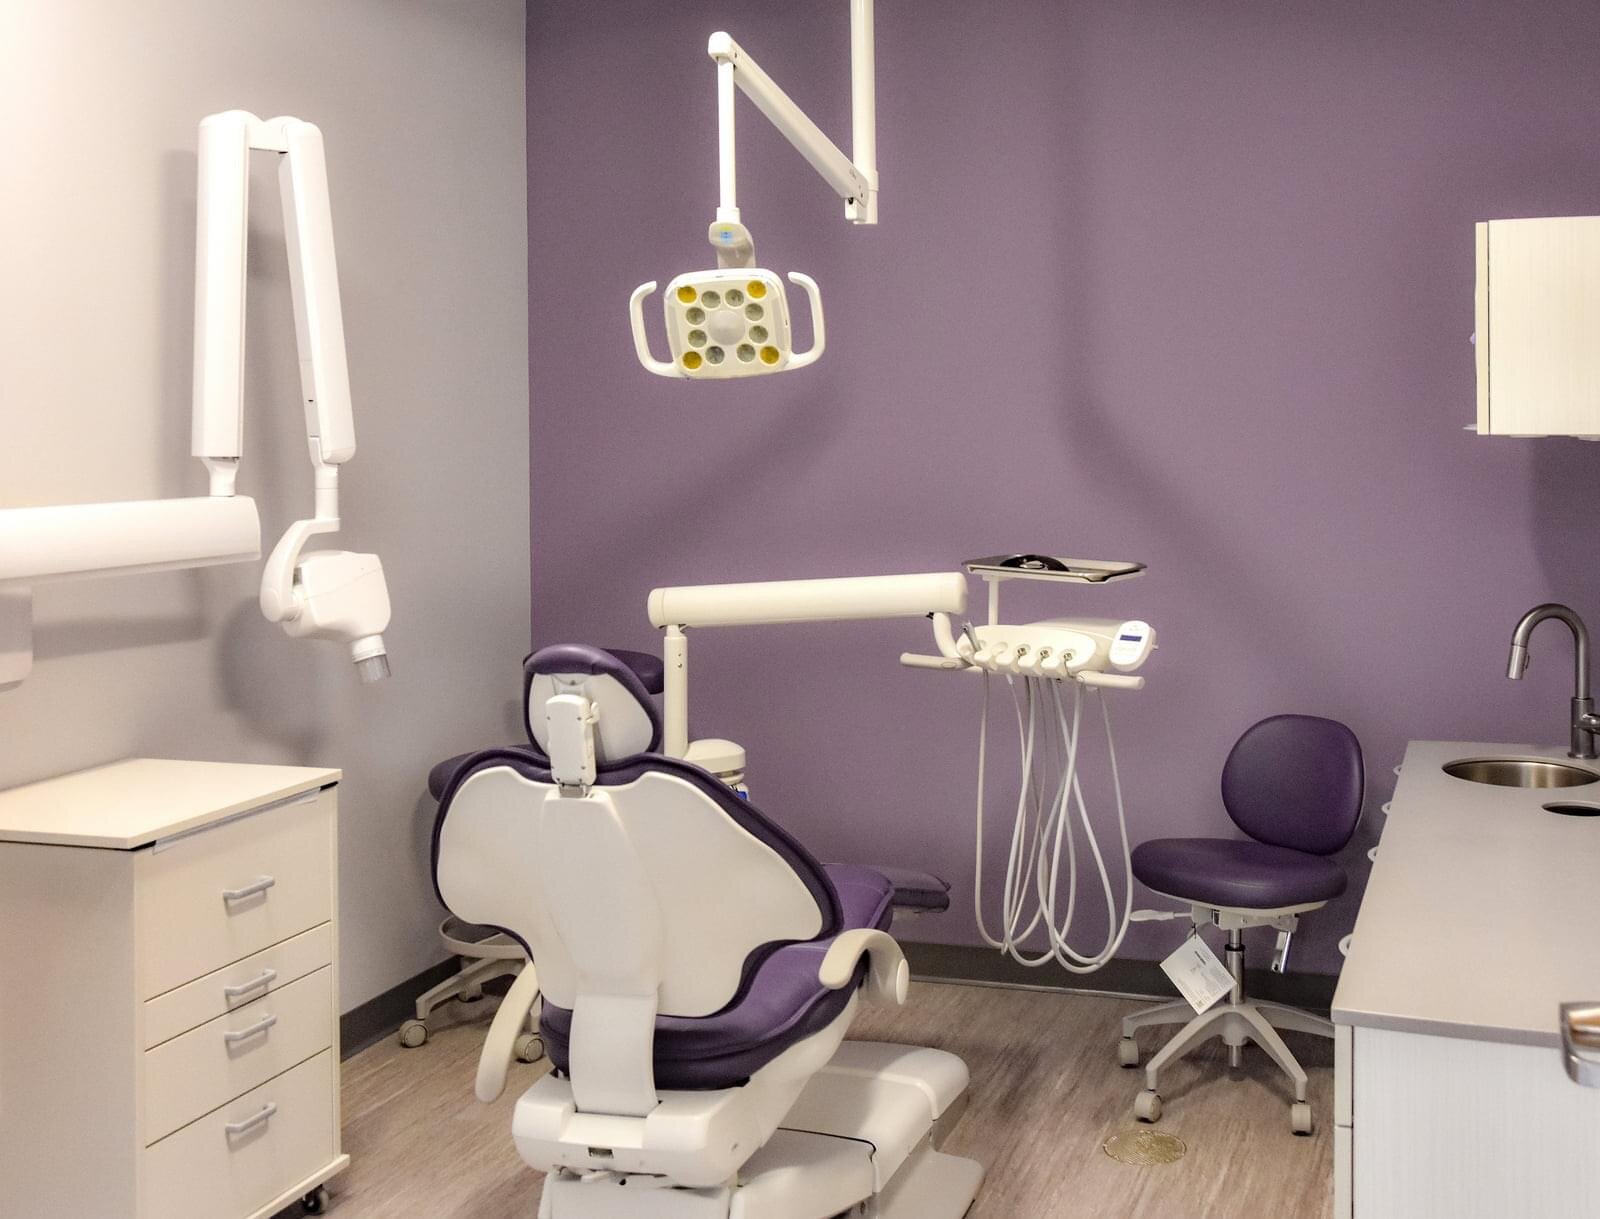 牙科治疗室(图片来源:Mitchell Grosky)